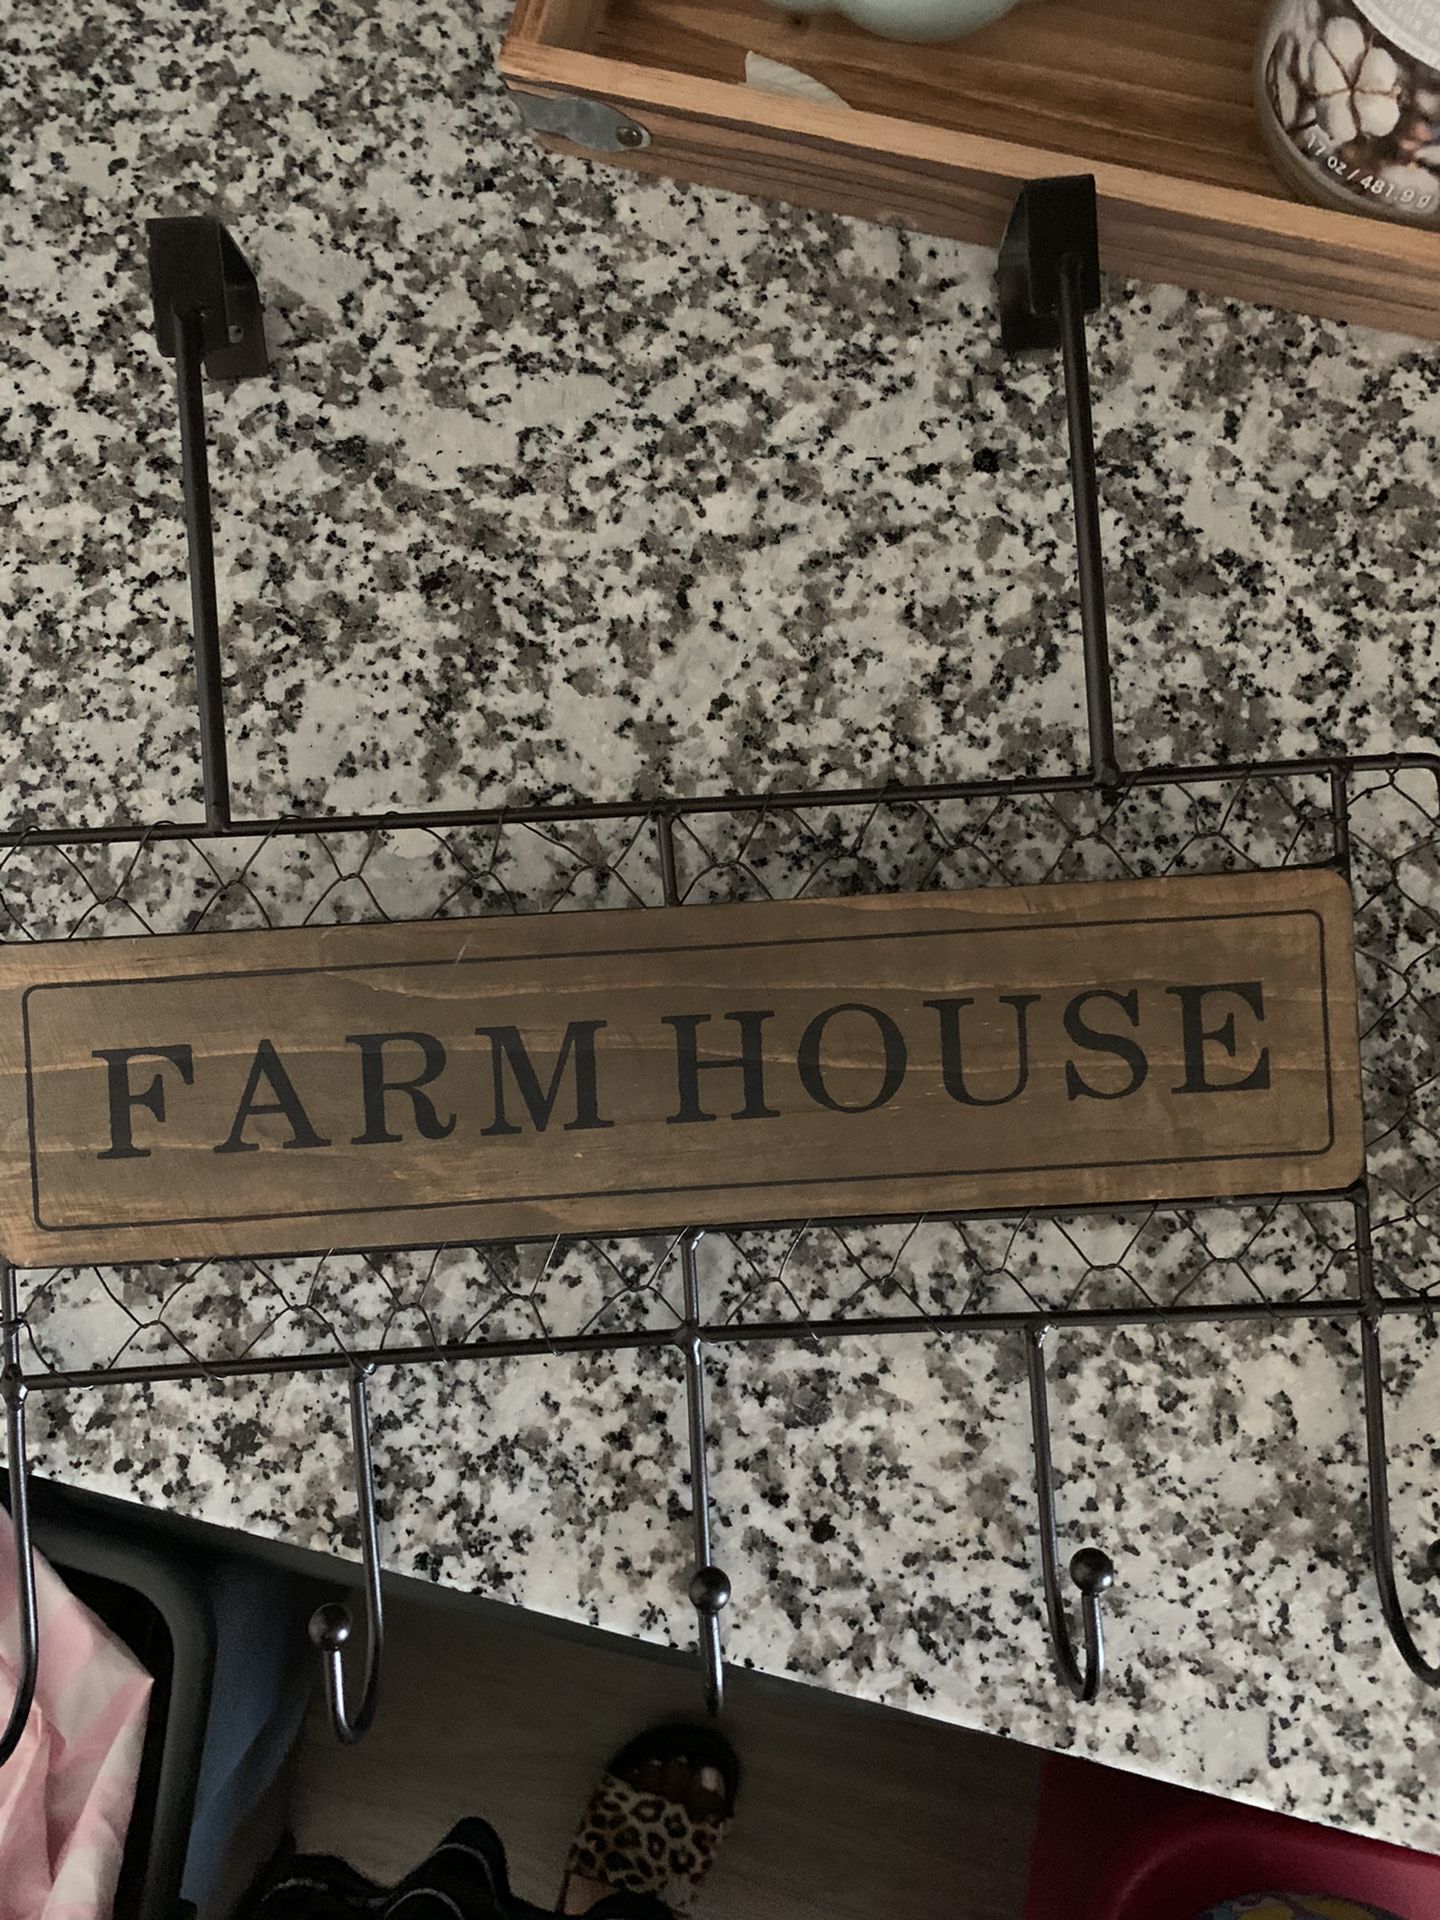 Farm house hook